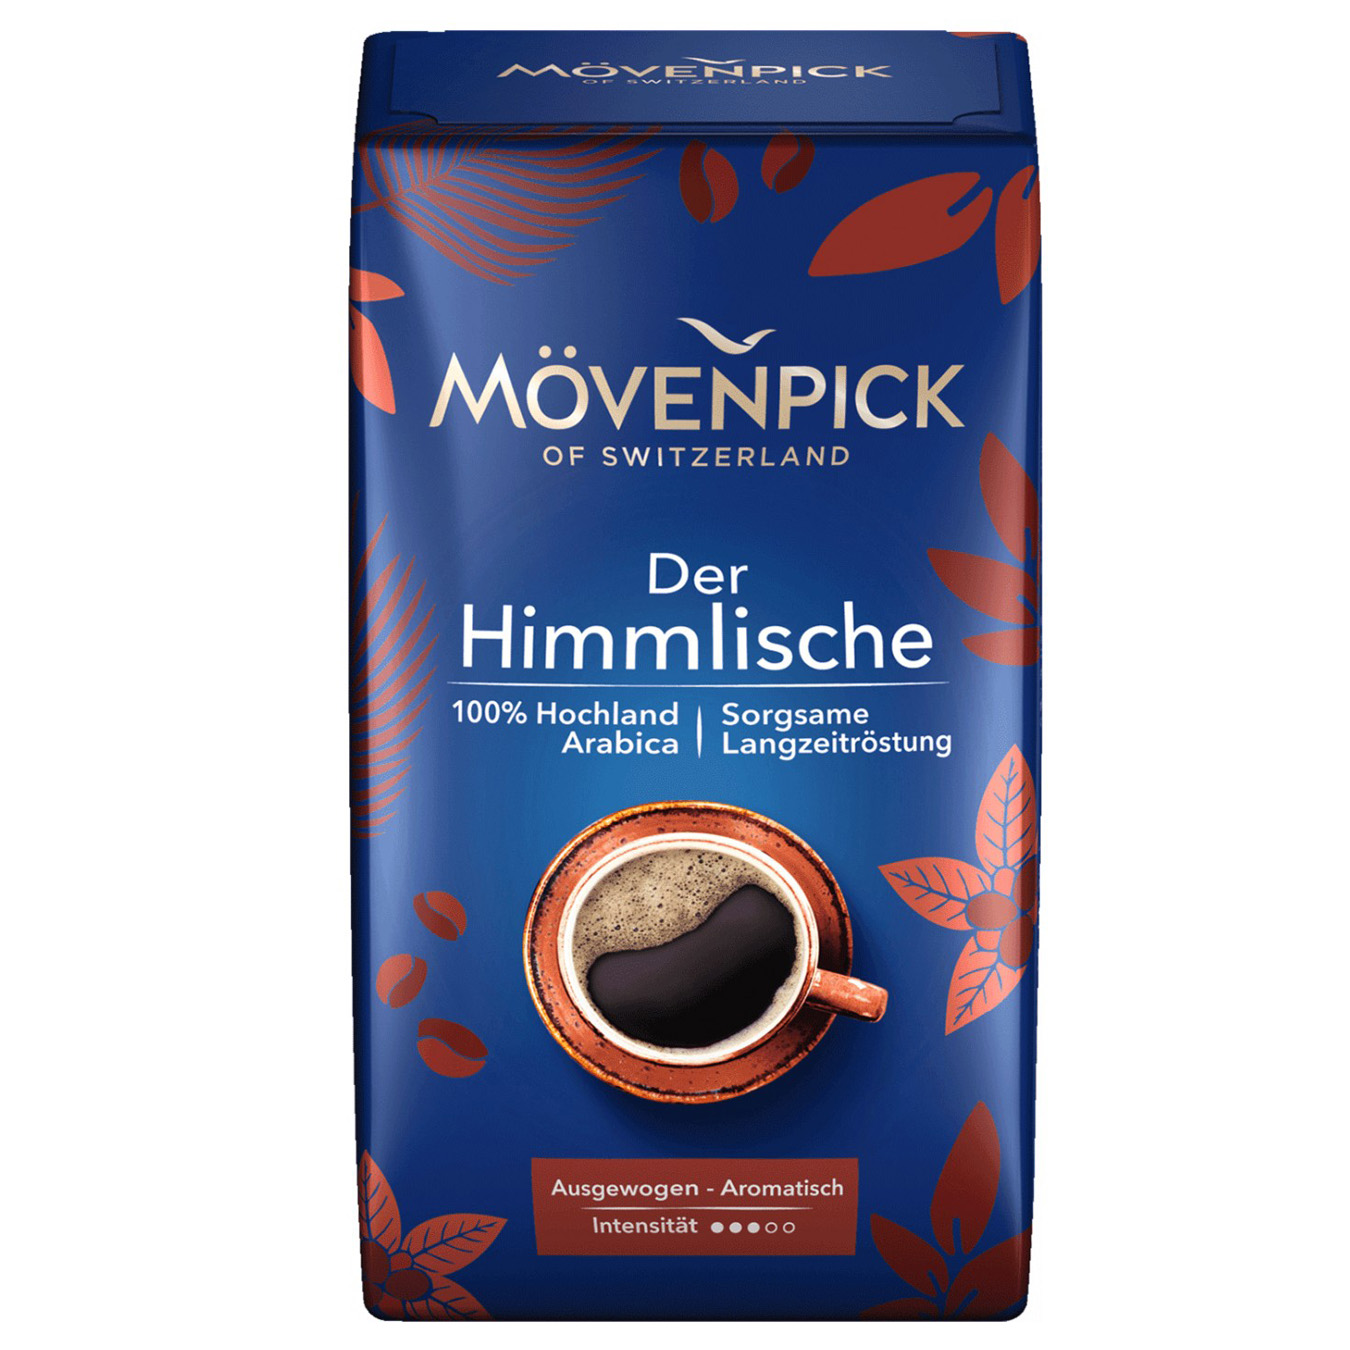 Movenpick Der Himmlische Ground Coffee